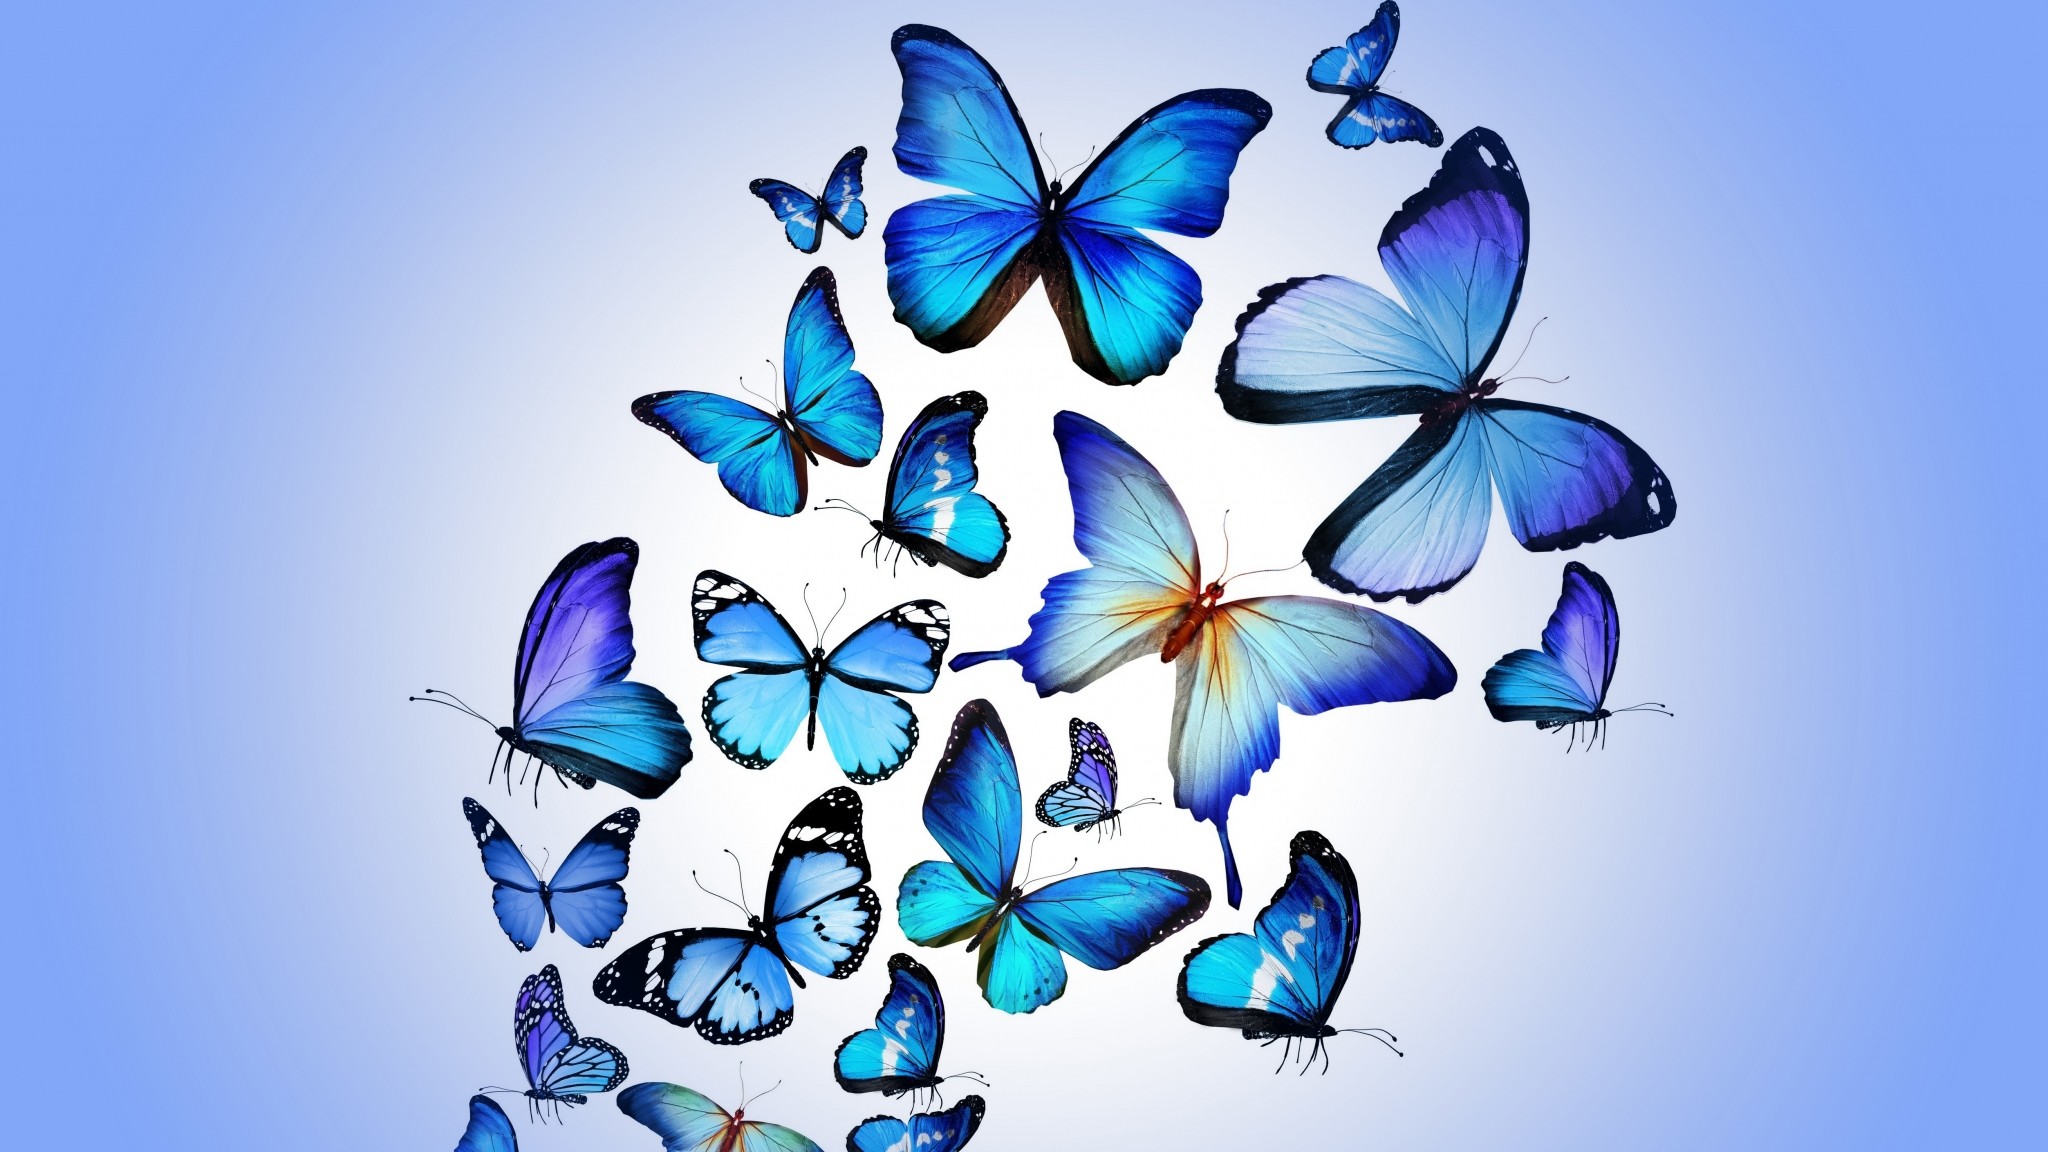 Tìm kiếm: Hình nền bướm cổ điển - Nếu bạn là người yêu thích phong cách cổ điển, chắc chắn bạn sẽ không thể bỏ qua bộ sưu tập hình nền bướm cổ điển này. Được thiết kế với những họa tiết tinh tế và màu sắc trang nhã, bức hình này sẽ khiến cho máy tính của bạn trở nên đẹp hơn bao giờ hết.